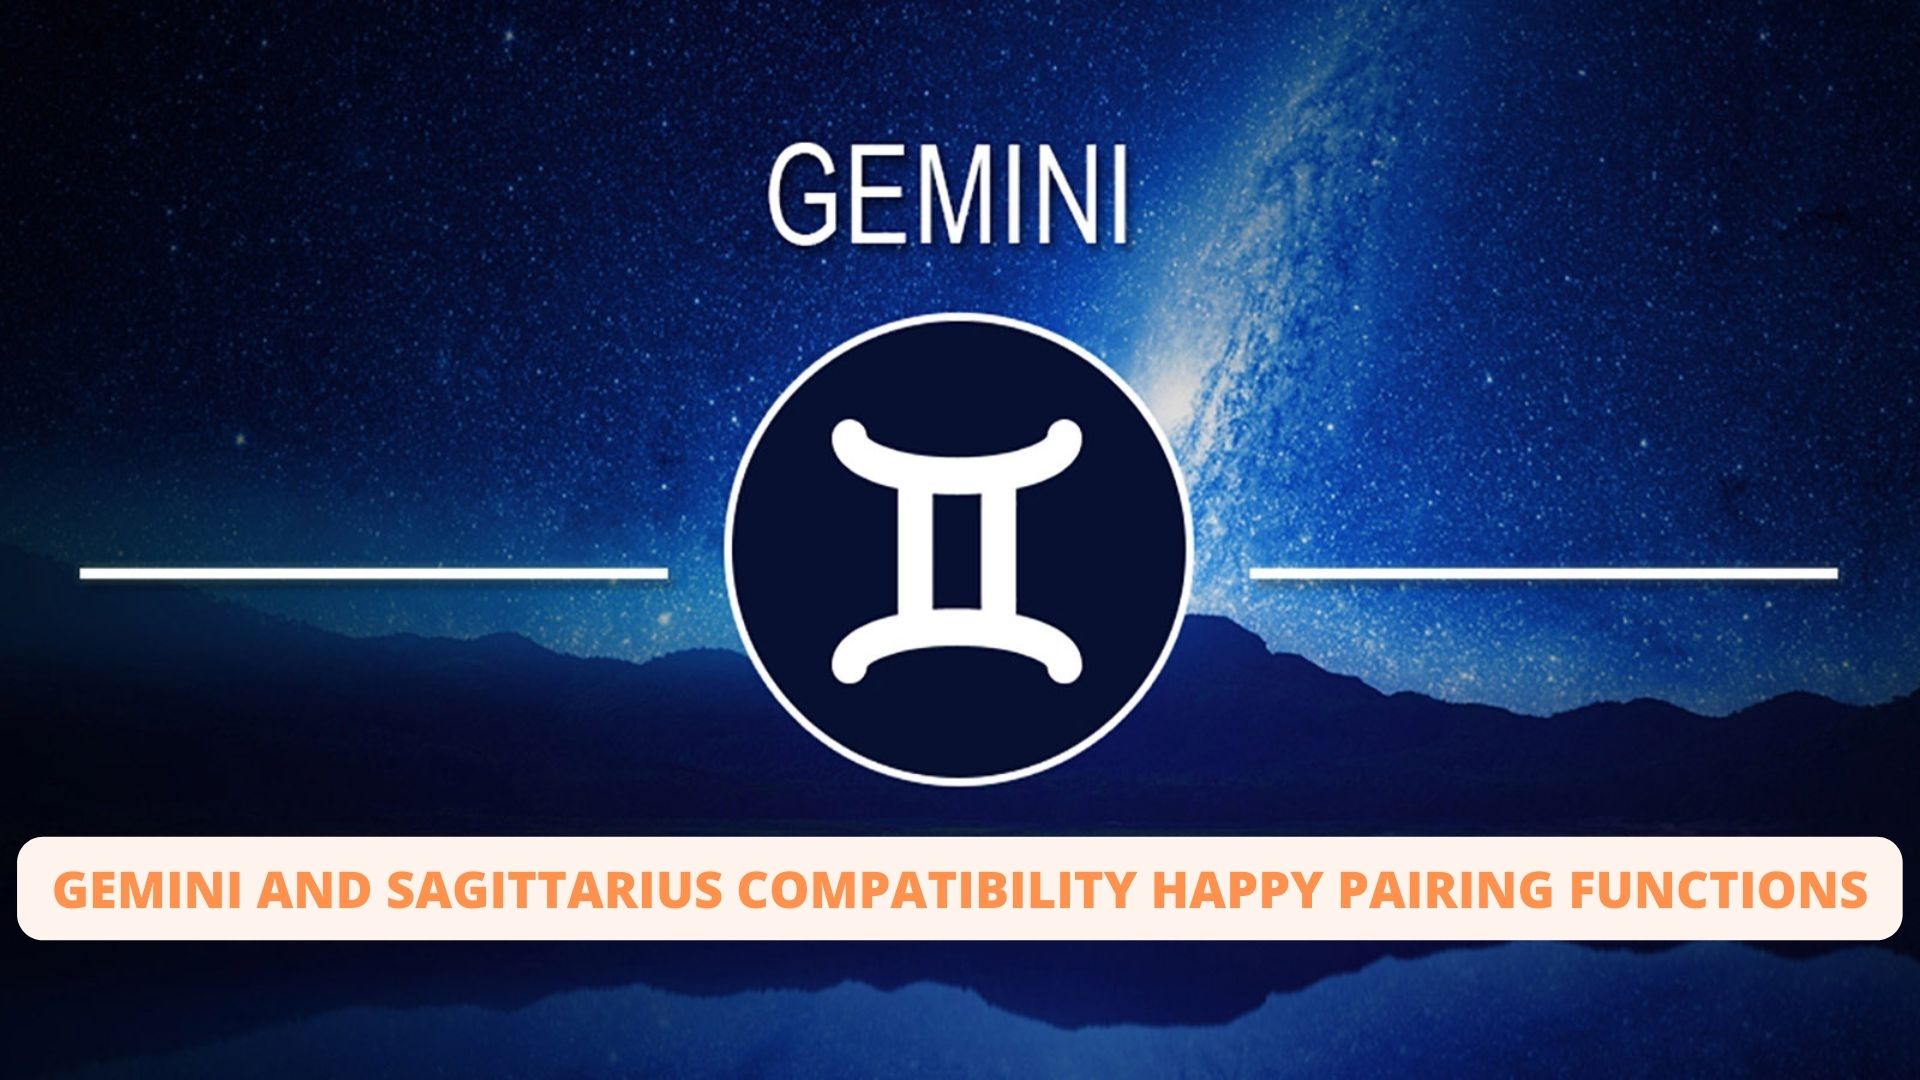 Gemini And Sagittarius Compatibility - Happy Pairing Functions